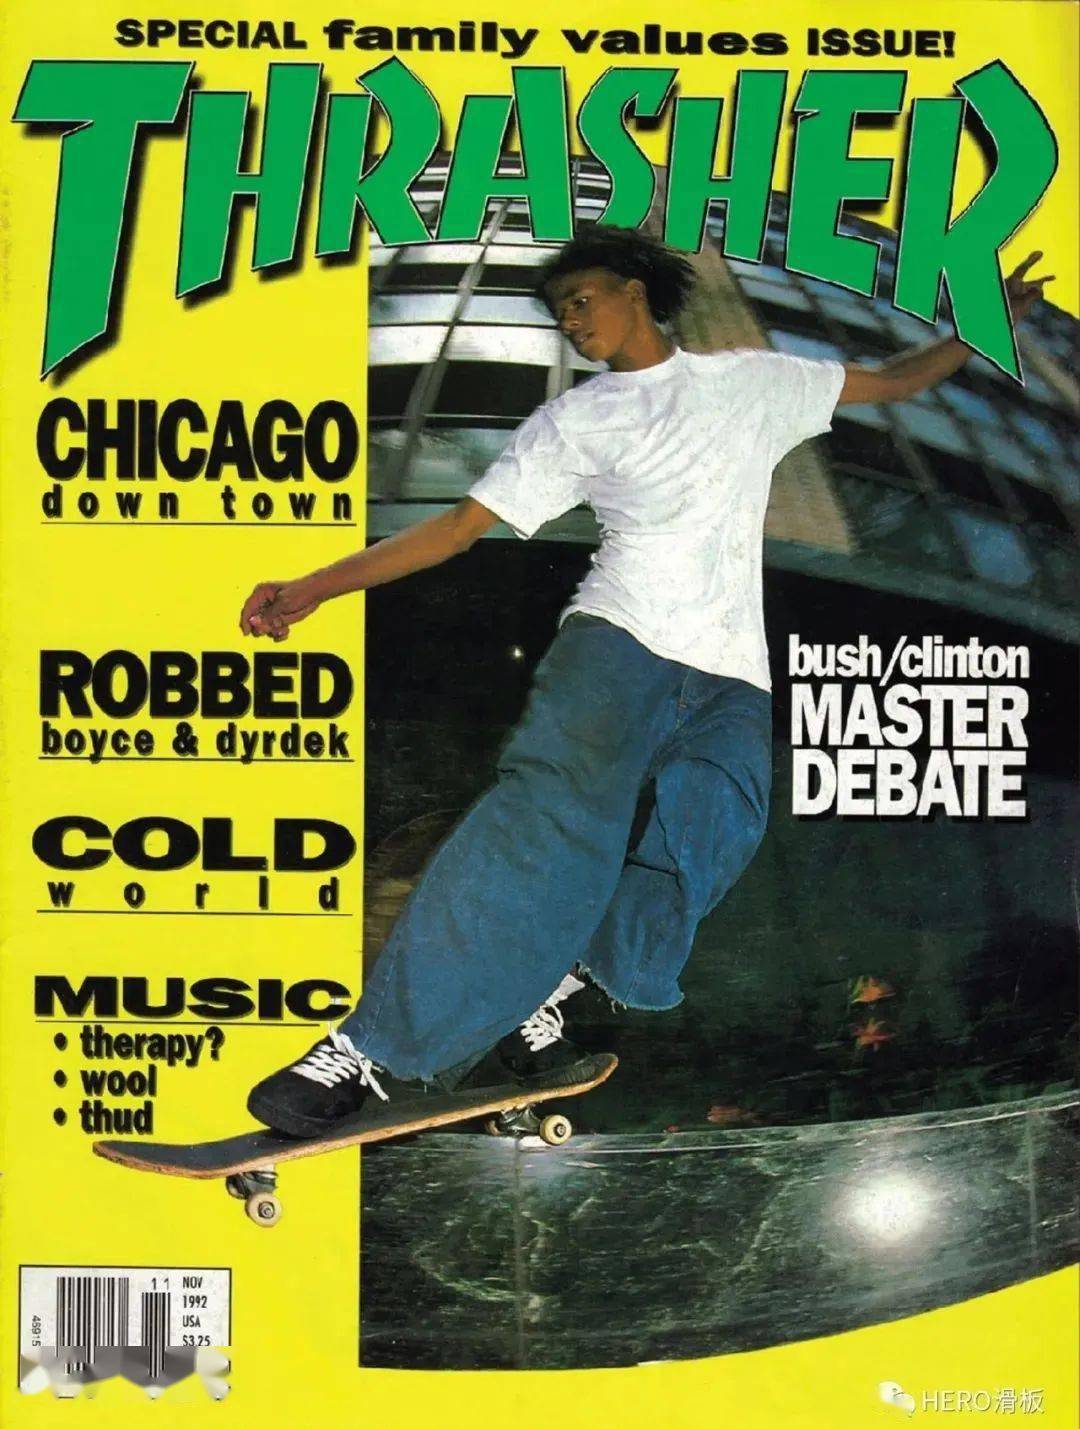 经过多年的深耕,thrasher 杂志早在滑手心中奠定起「滑板圣经」的地位